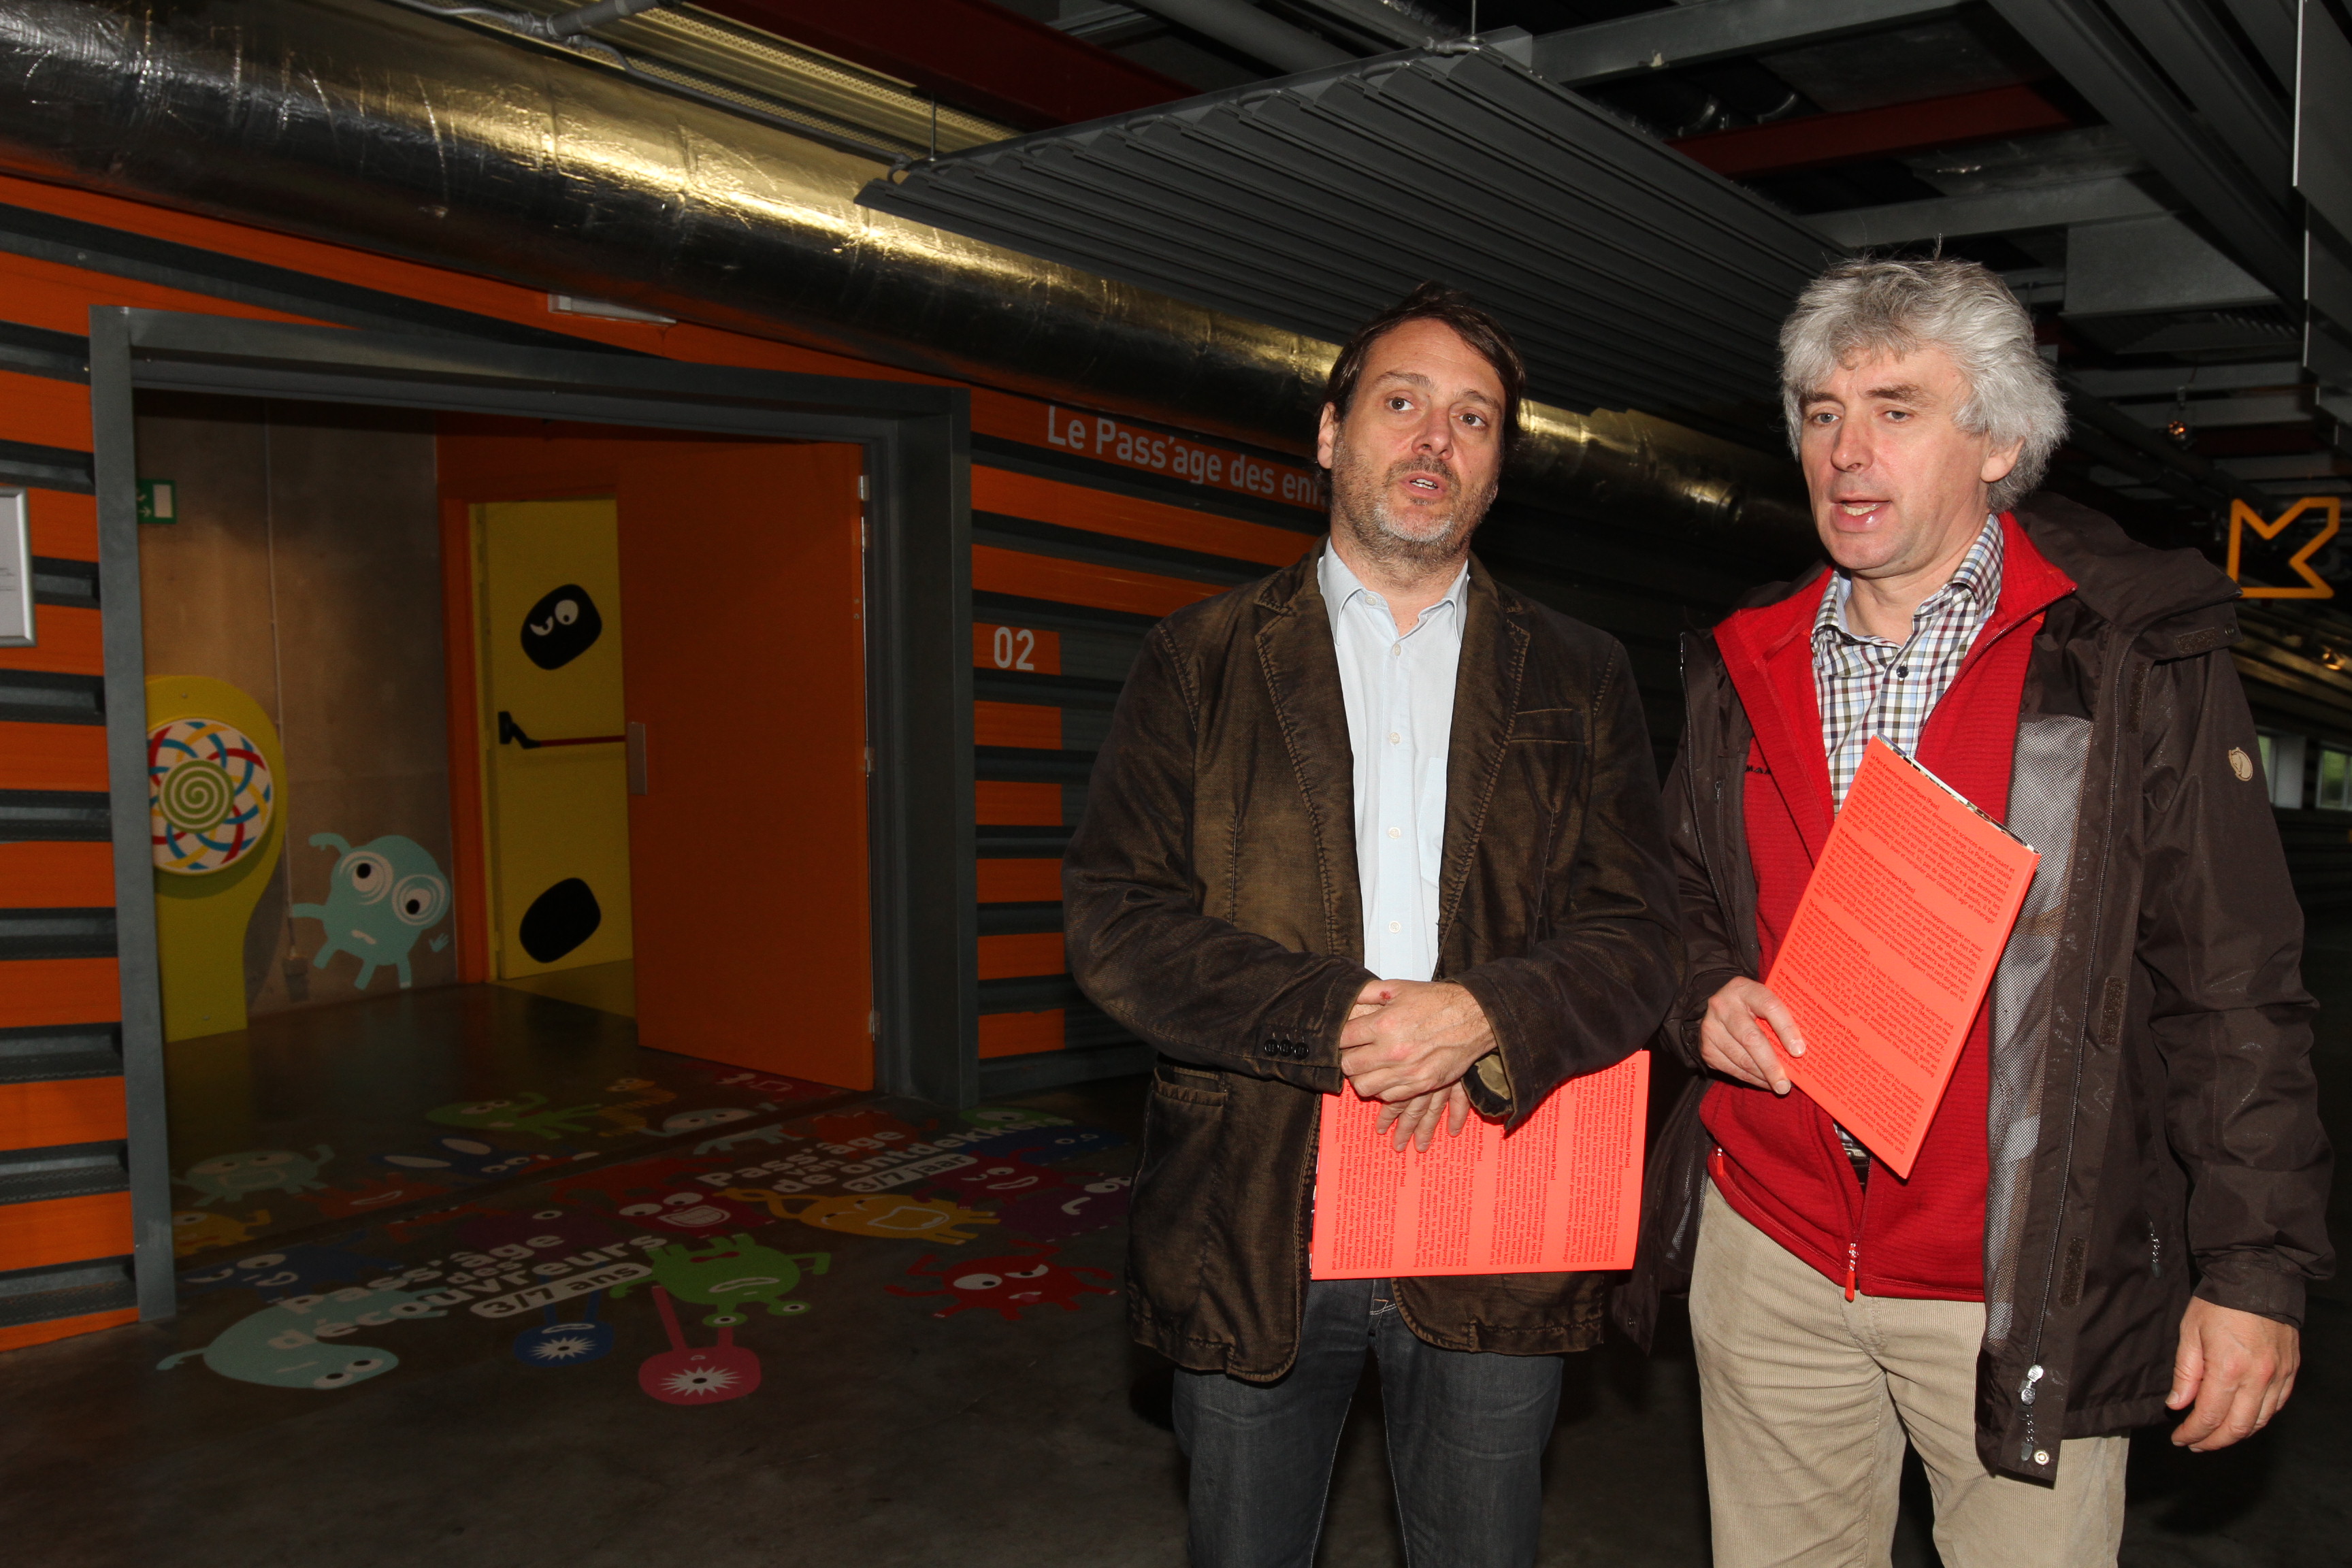 Luc Bas and Tim Badman at PASS (Parc d'aventures scientifiques), Frameries